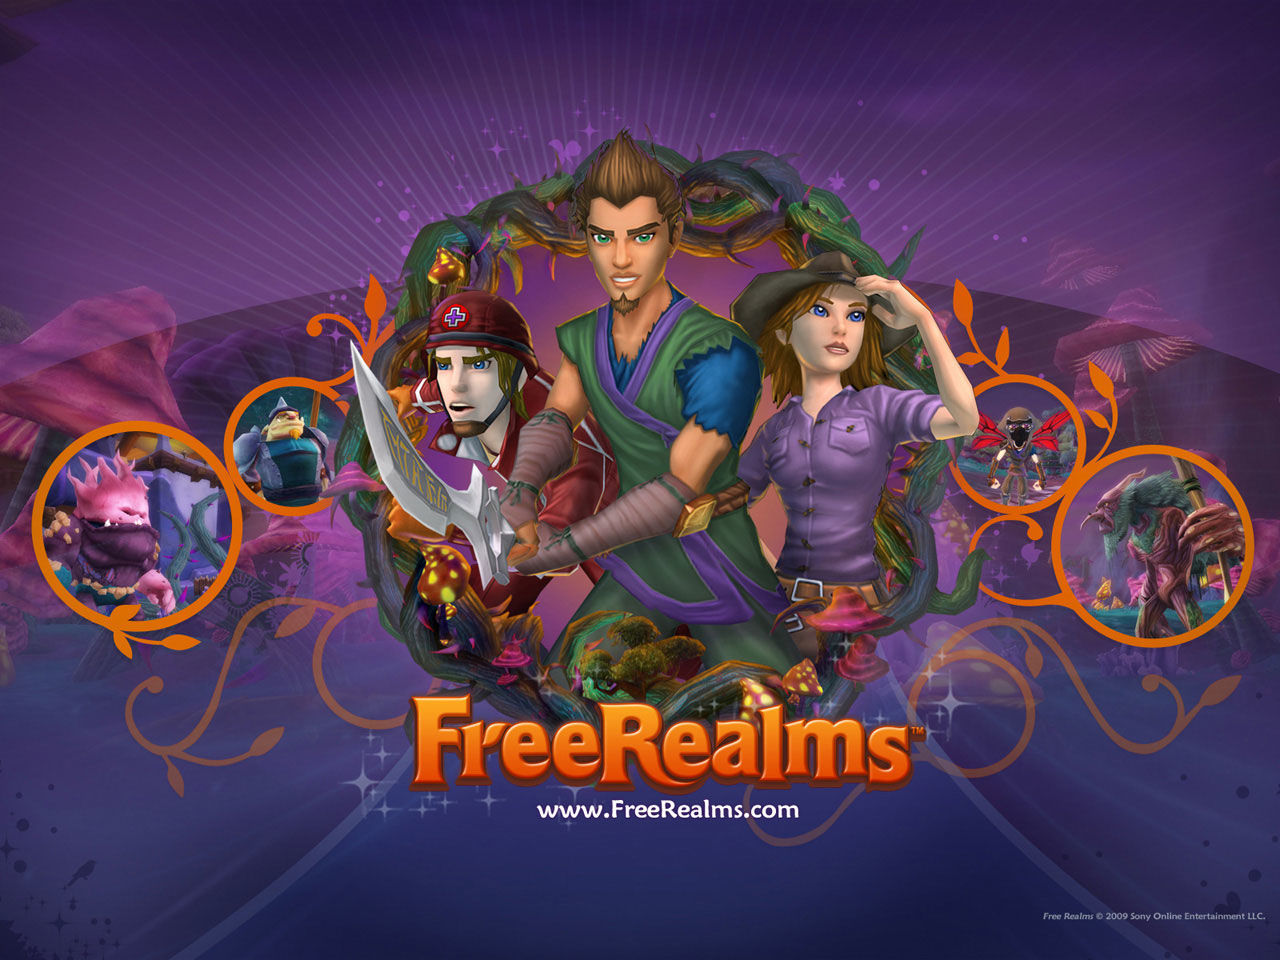 Free Realms llegará a PlayStation 3 a finales de marzo